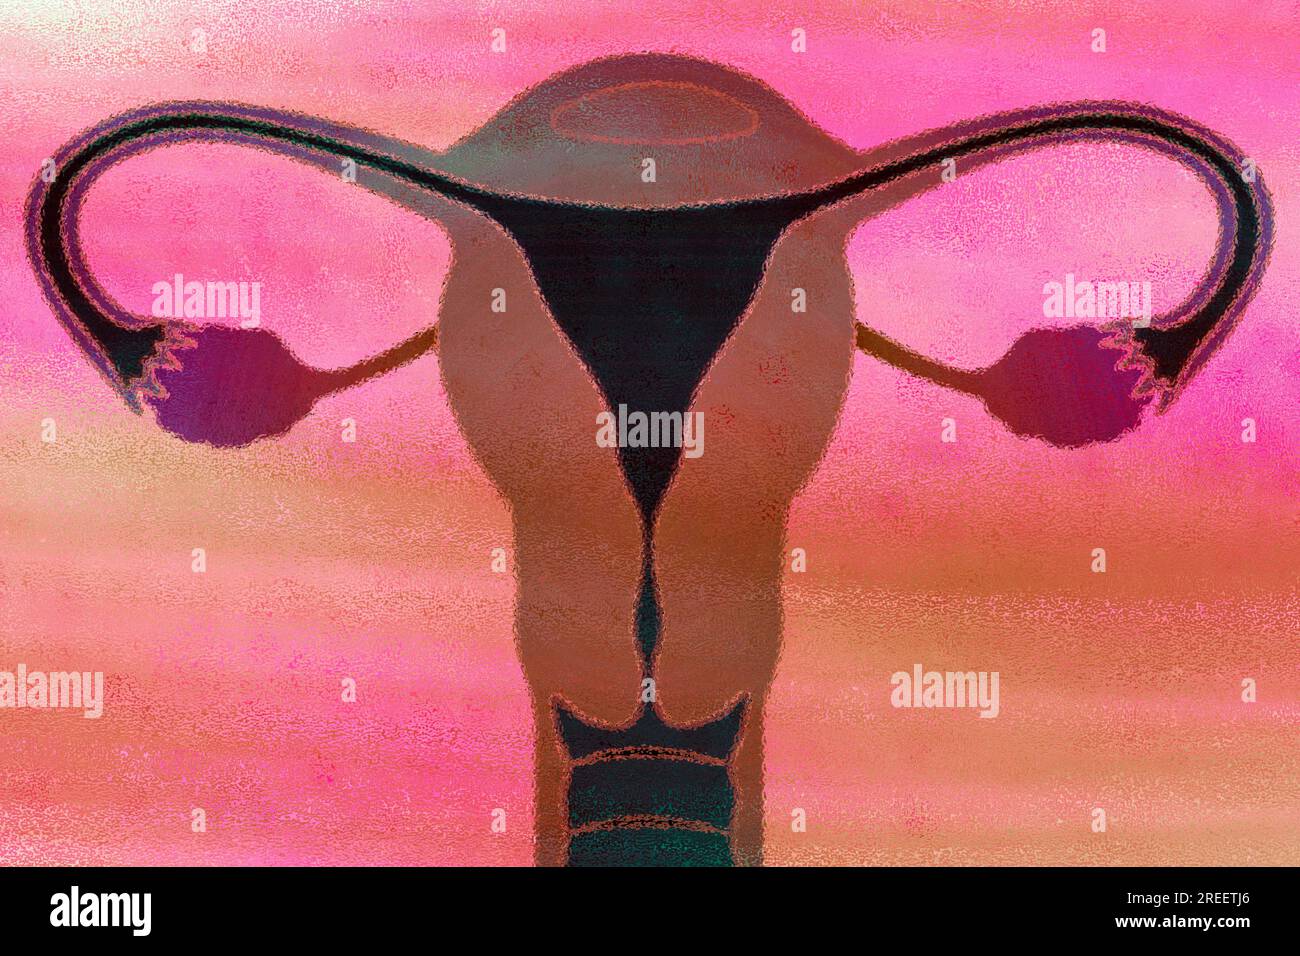 C'est l'utérus et c'est là que mûrit un ovule fécondé Banque D'Images